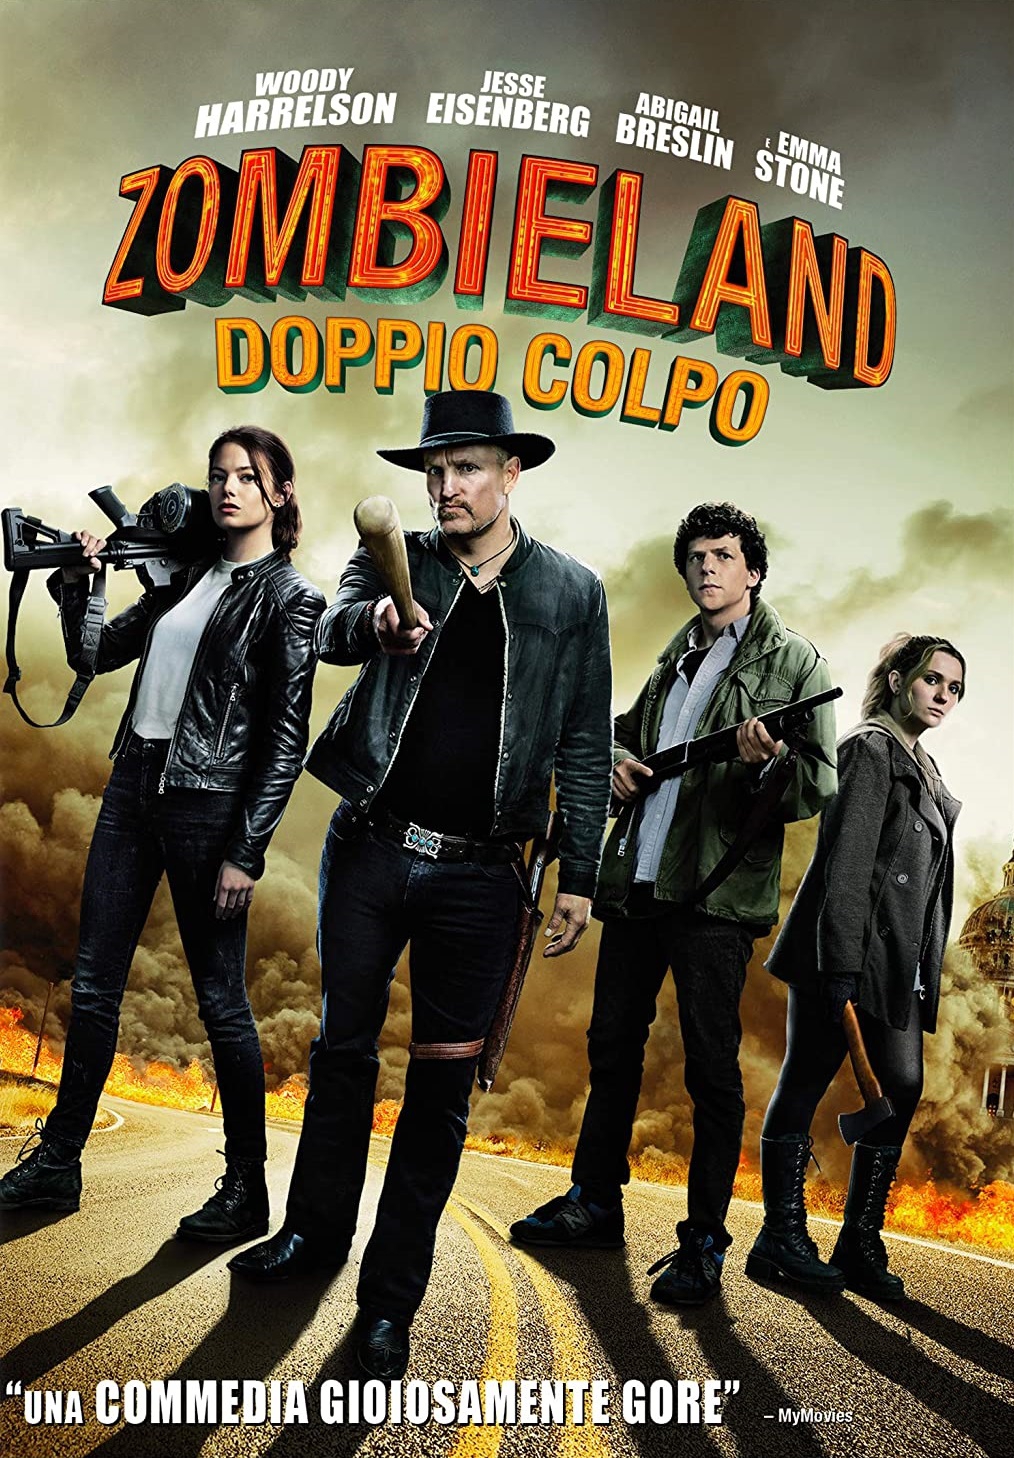 Zombieland: Doppio colpo [HD] (2019)